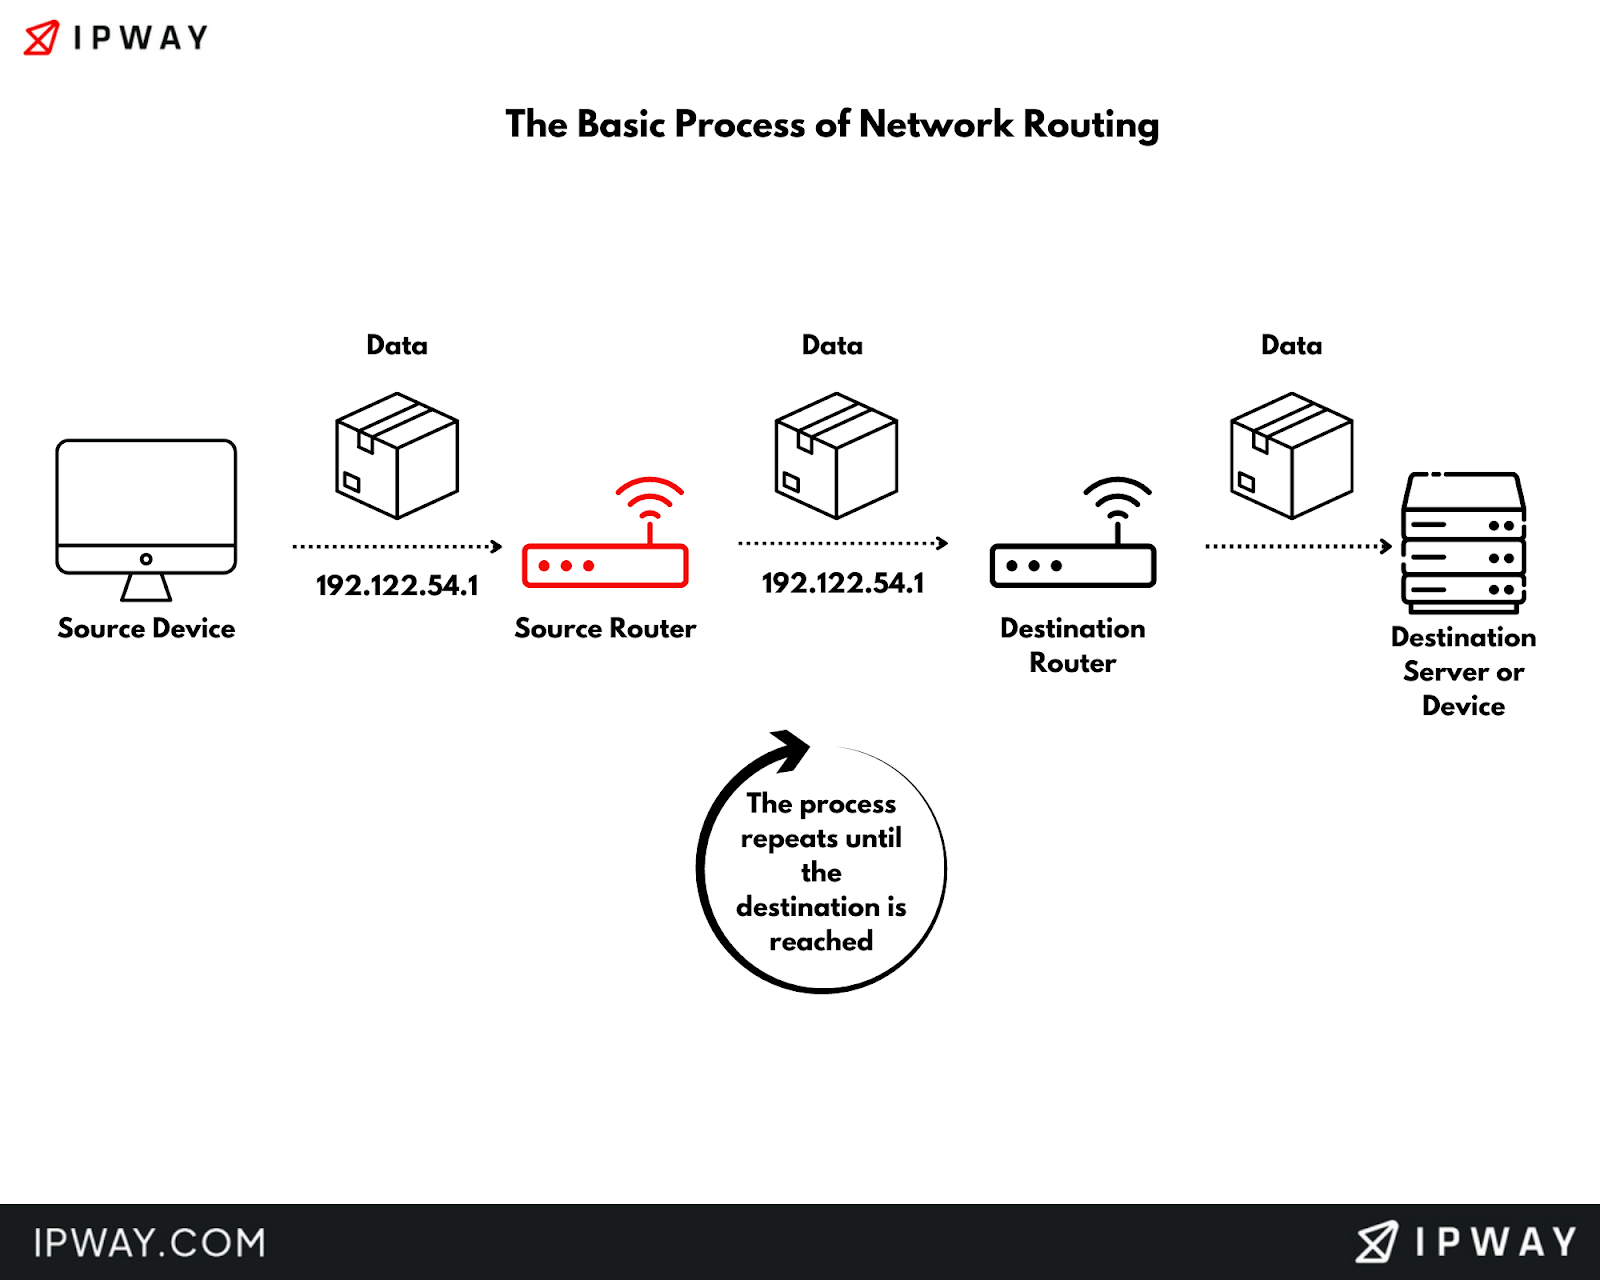 IPWAY - Network Routing